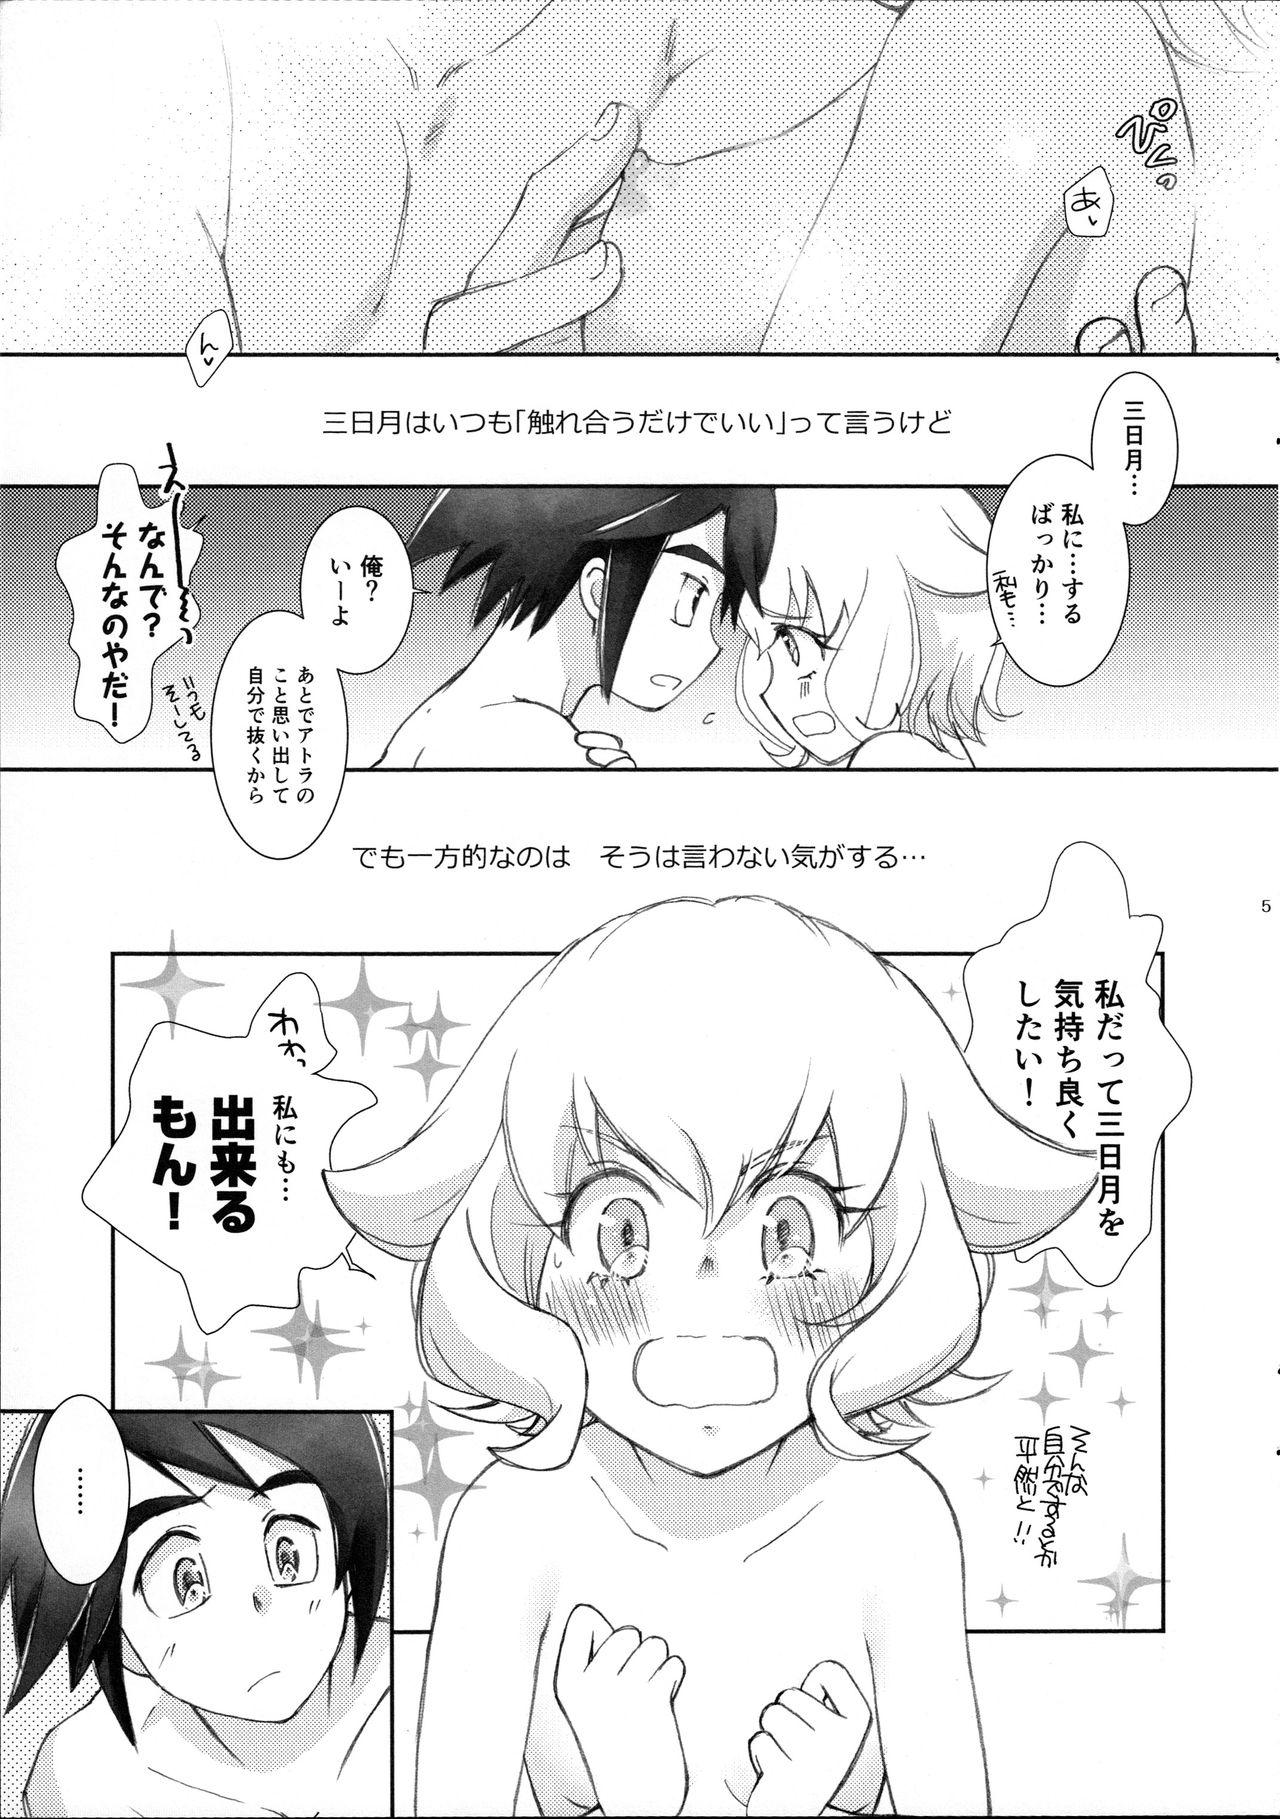 Petite Teenager Mikazuki wa Itsumo Saigomade Shinai - Mobile suit gundam tekketsu no orphans Hunk - Page 4